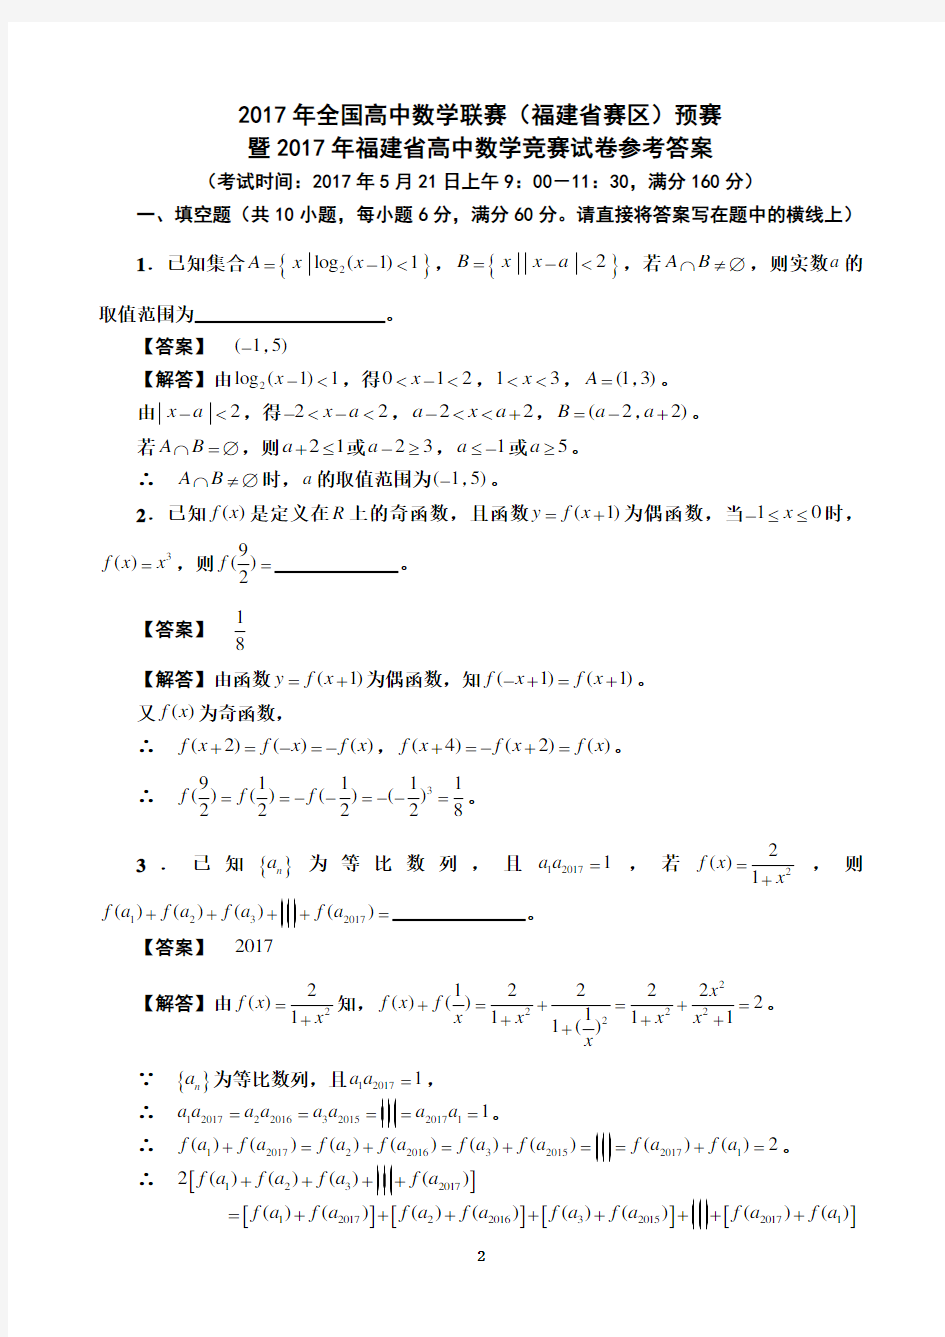 2017福建省高中数学竞赛预赛试题